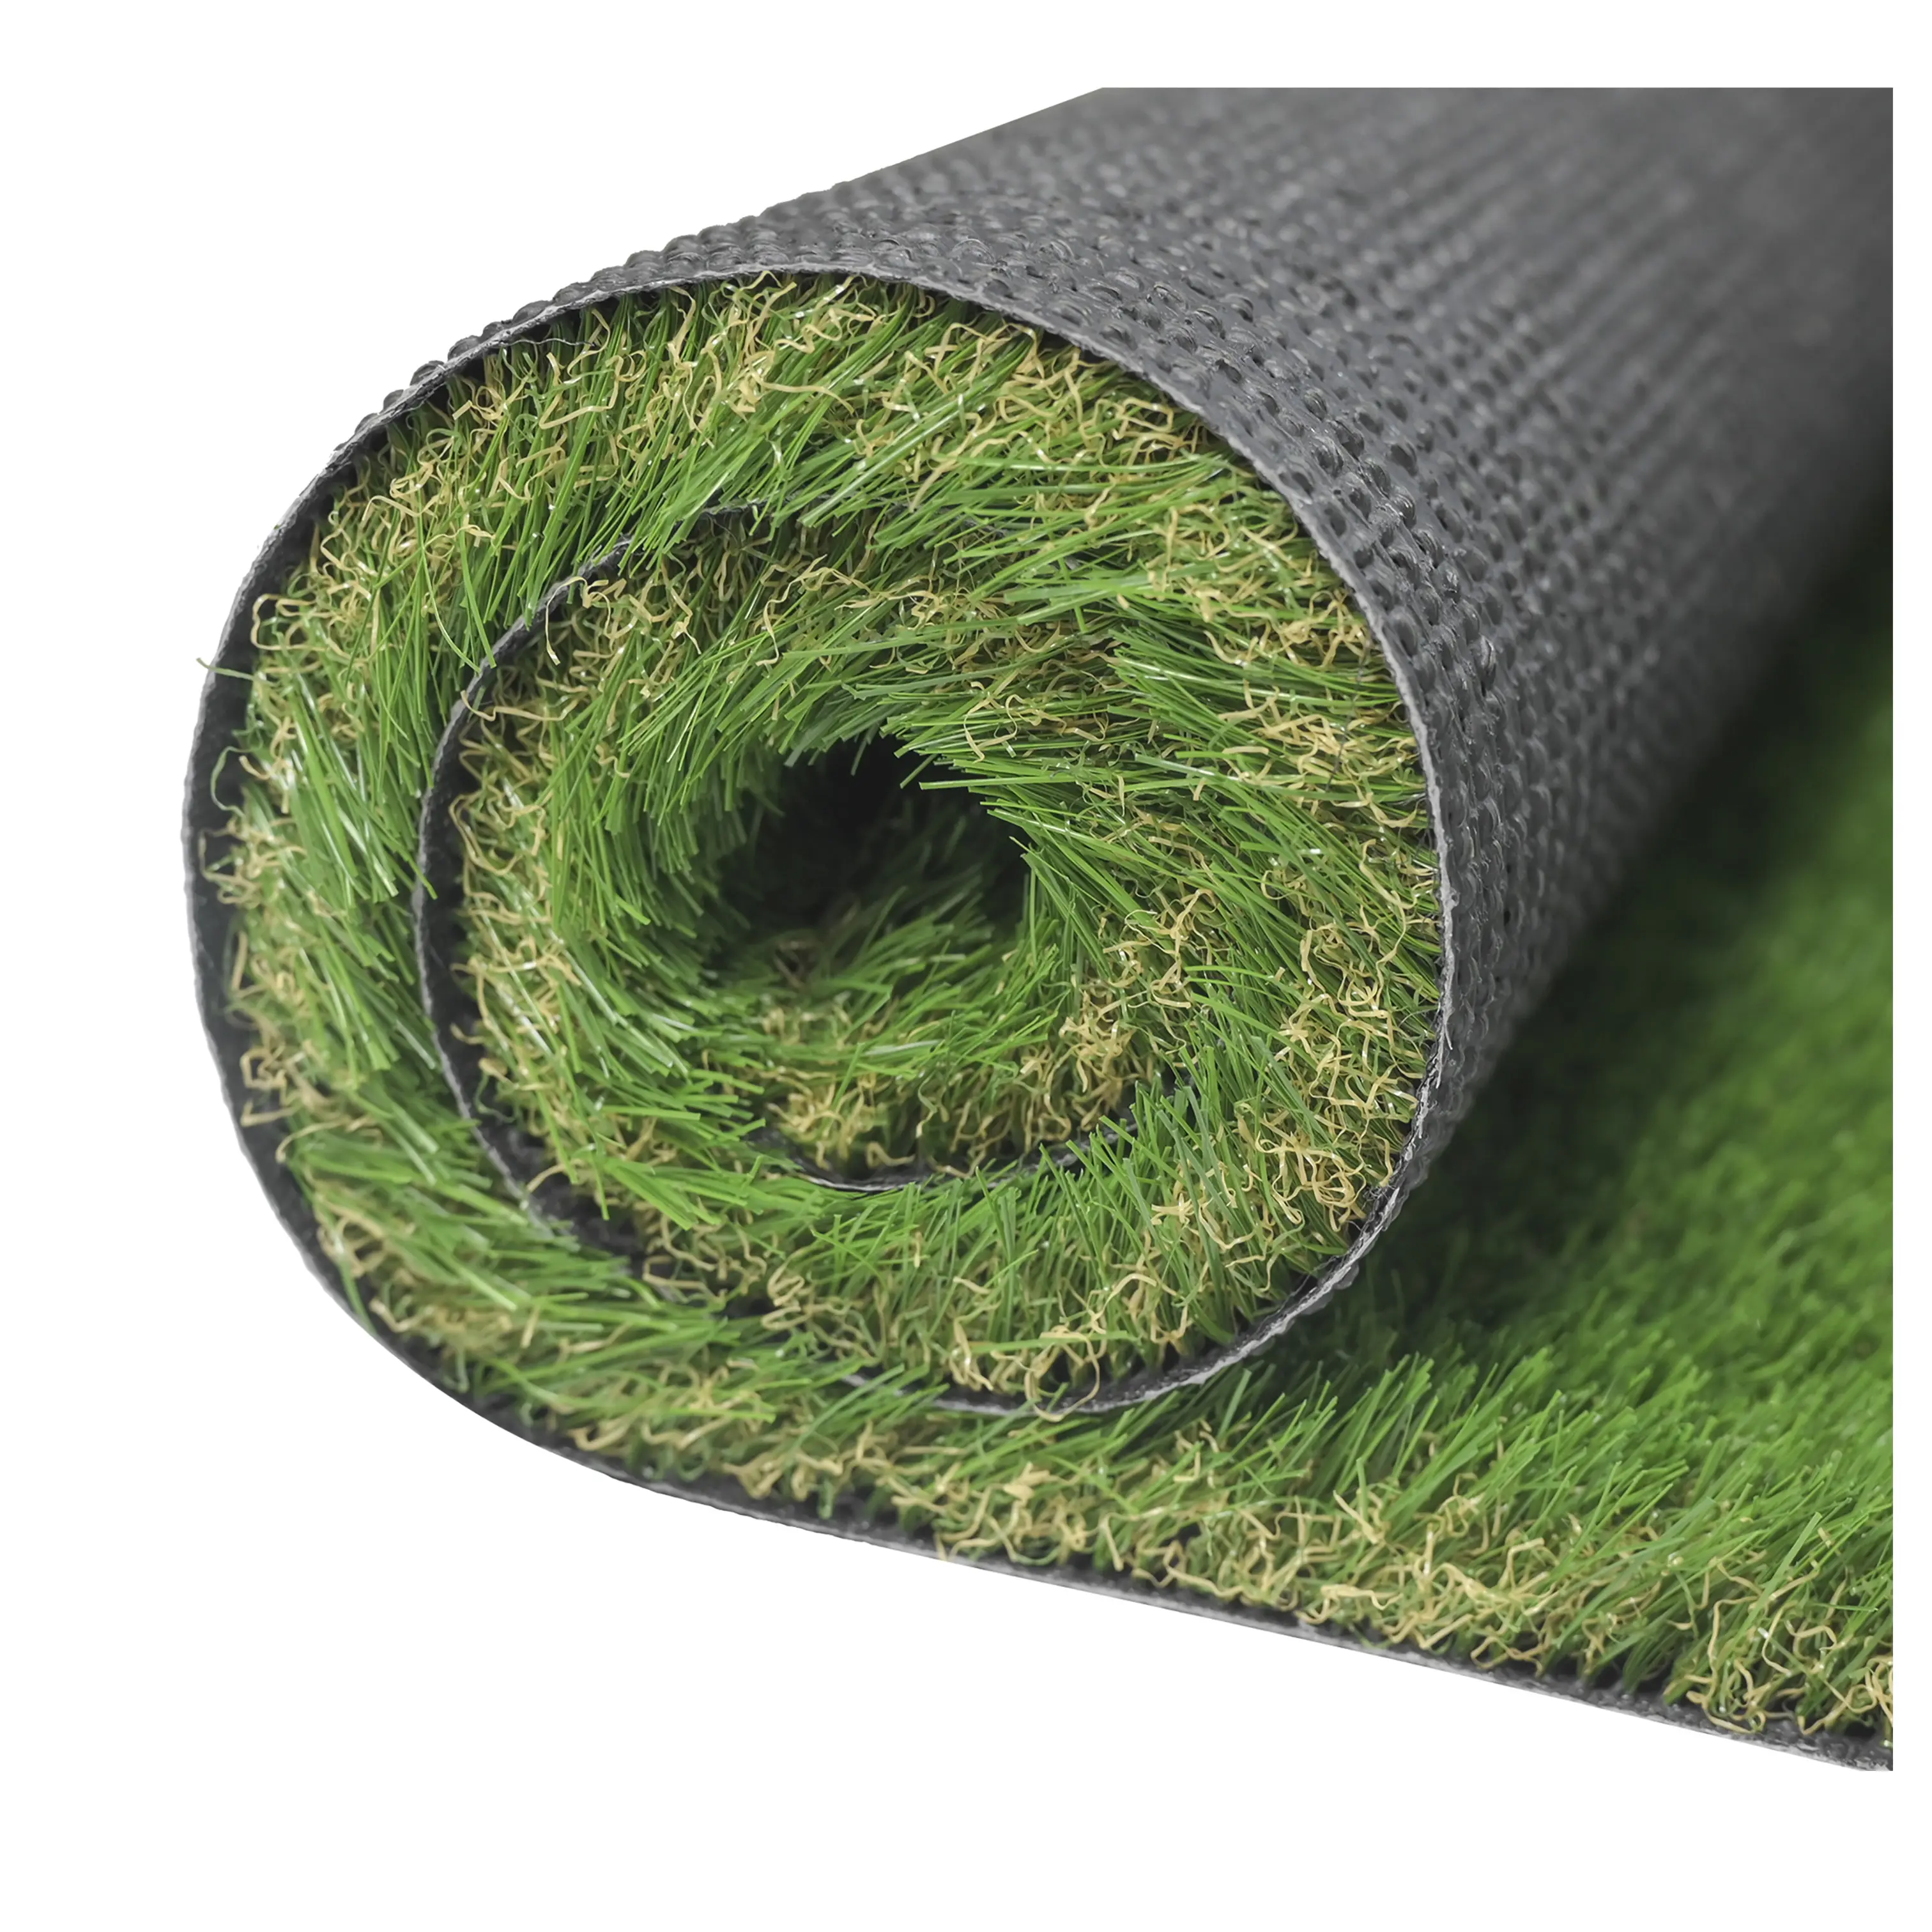 JS fabrika doğrudan bahçe için yüksek kaliteli suni çim sentetik çim dekorasyon çimenlik çimi üretir